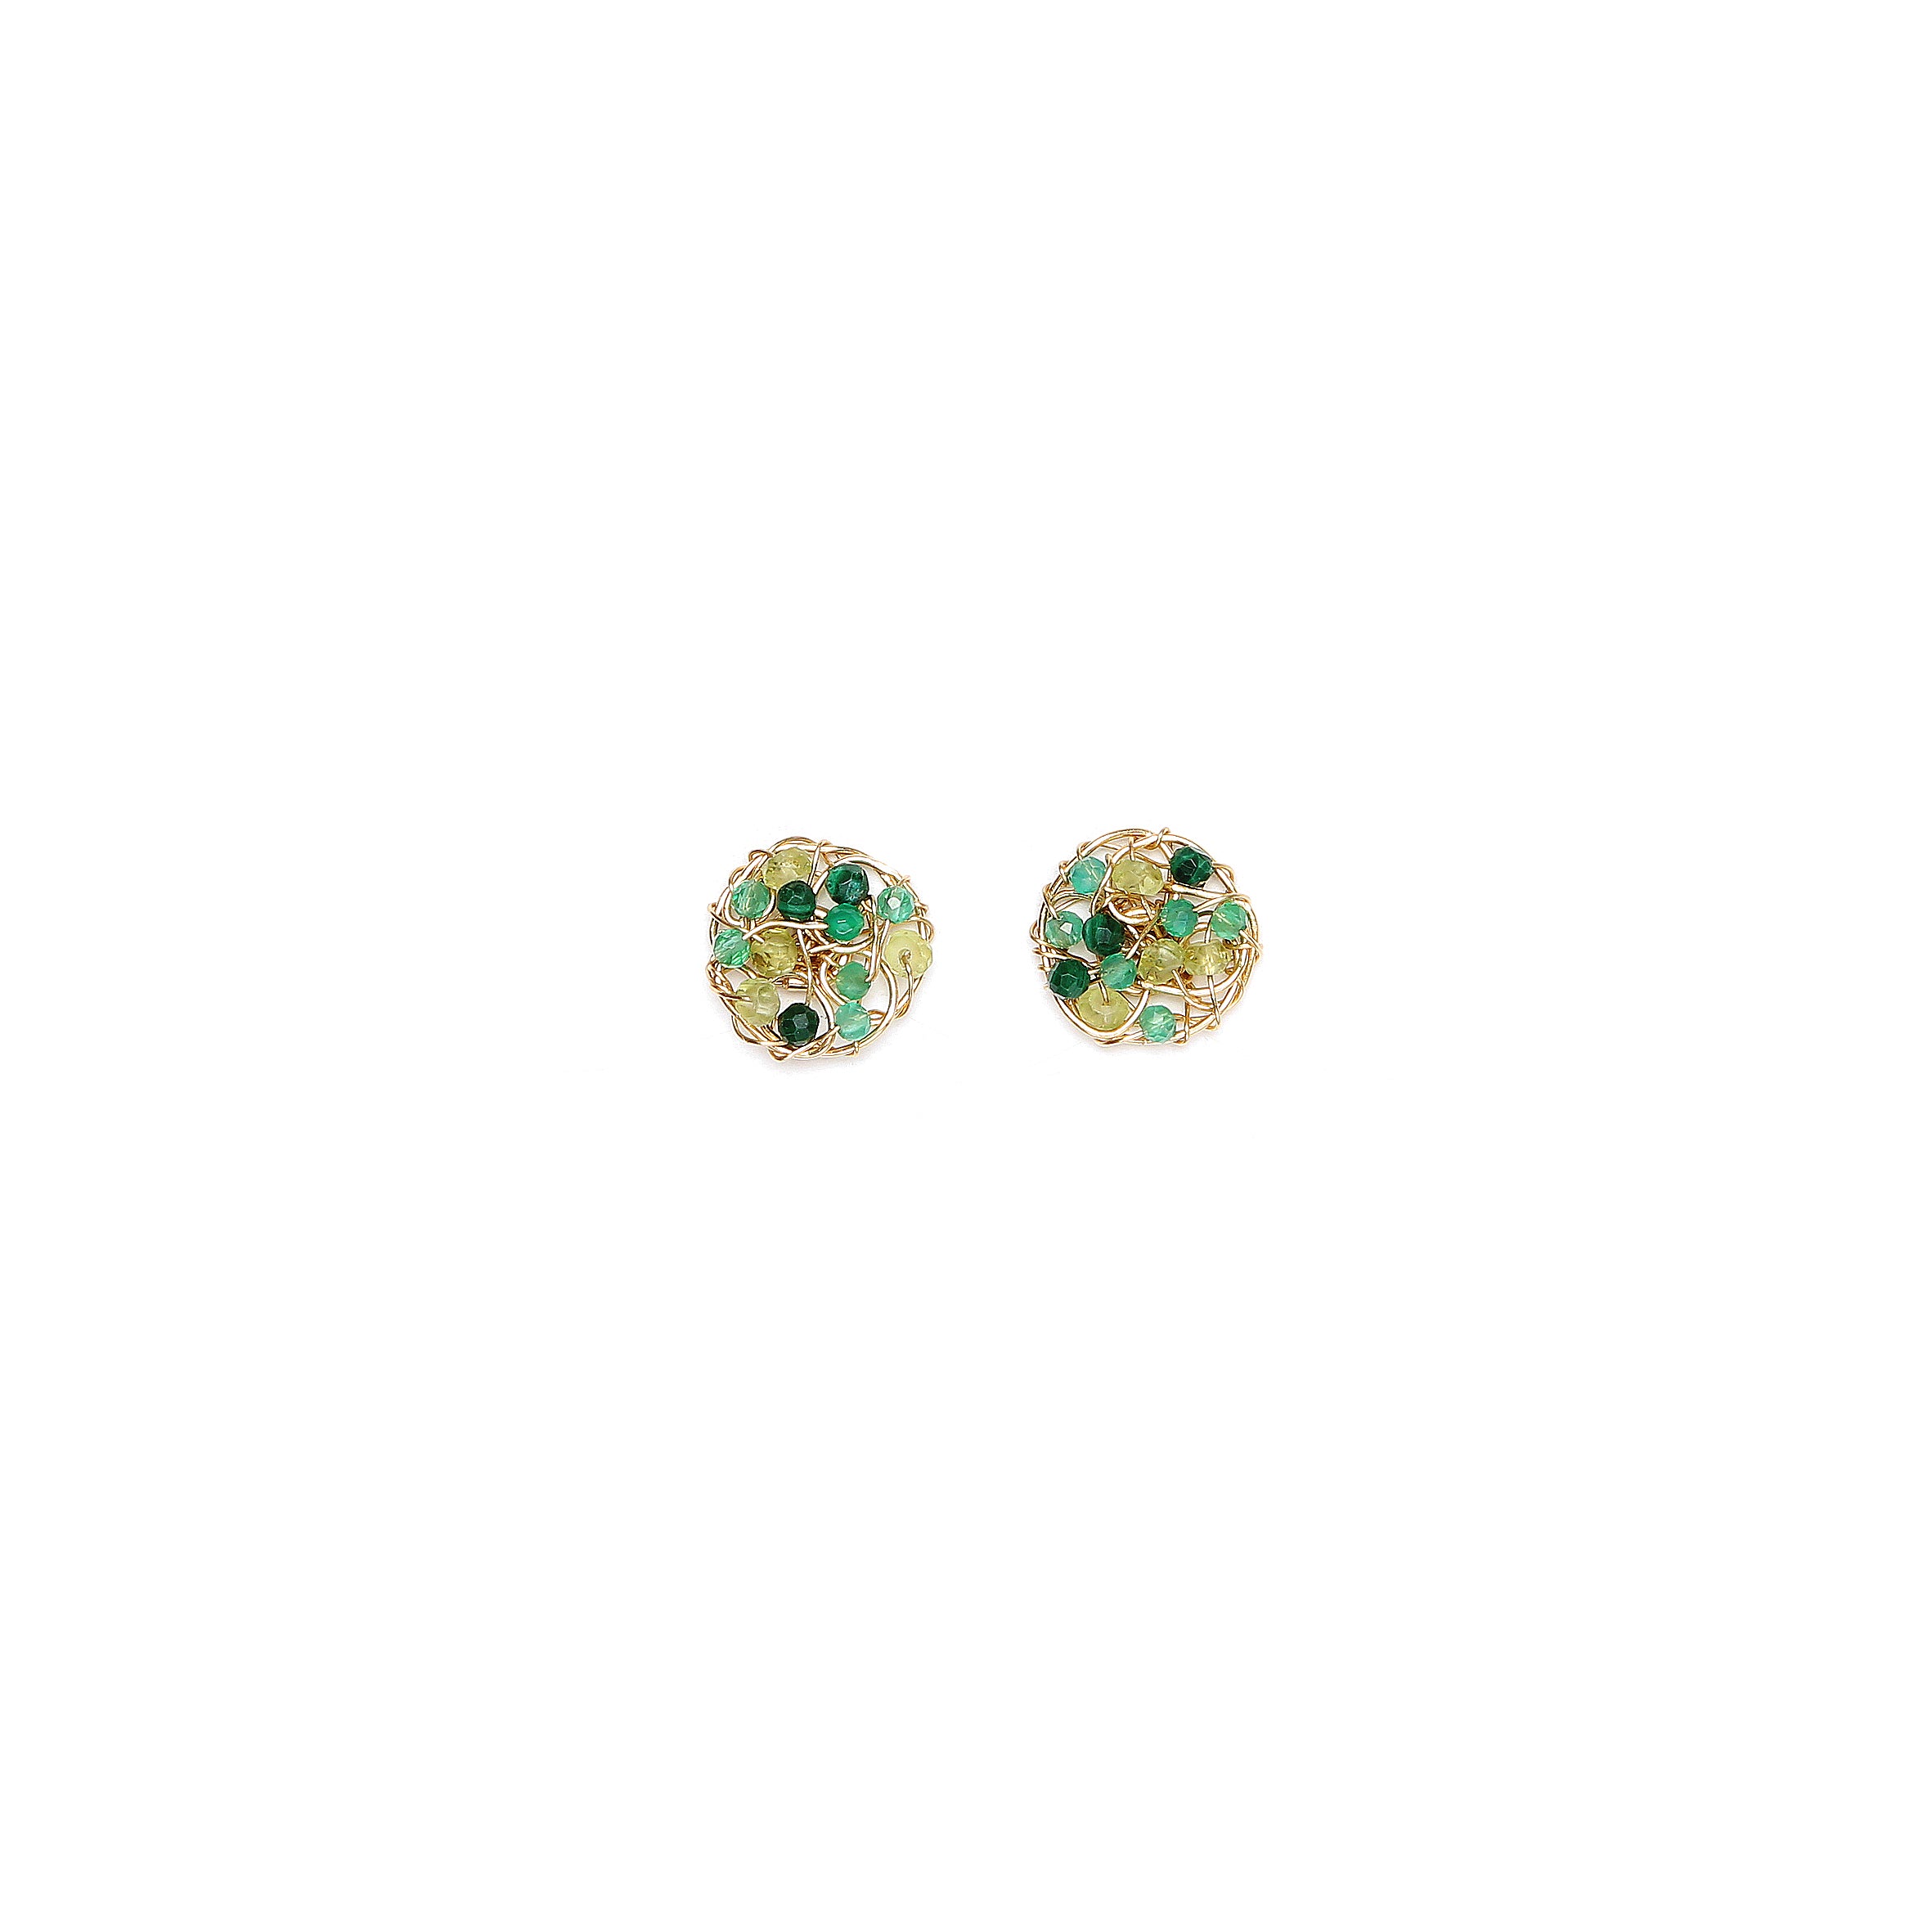 Aura Stud Earrings #1 (10mm) - Green Gems Mix Earrings TARBAY   